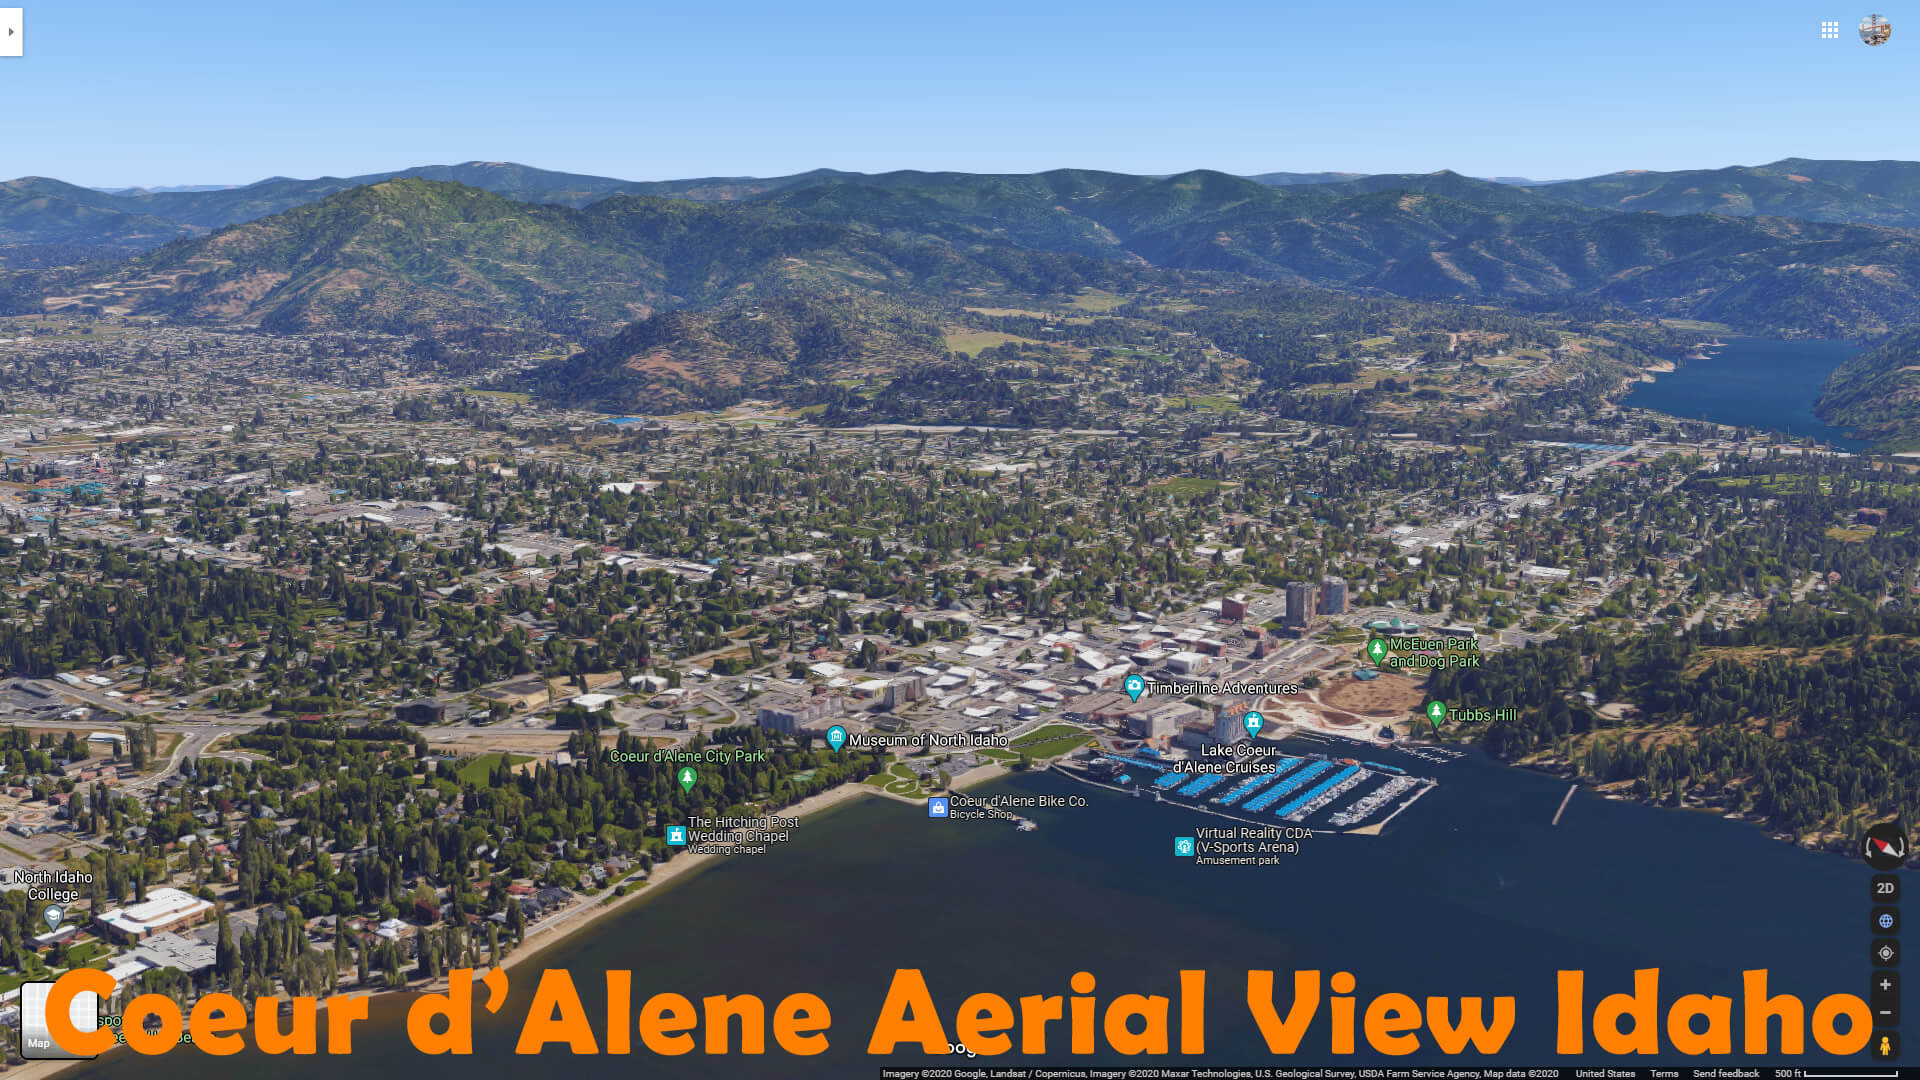 Coeur d'Alene Aerial View Idaho